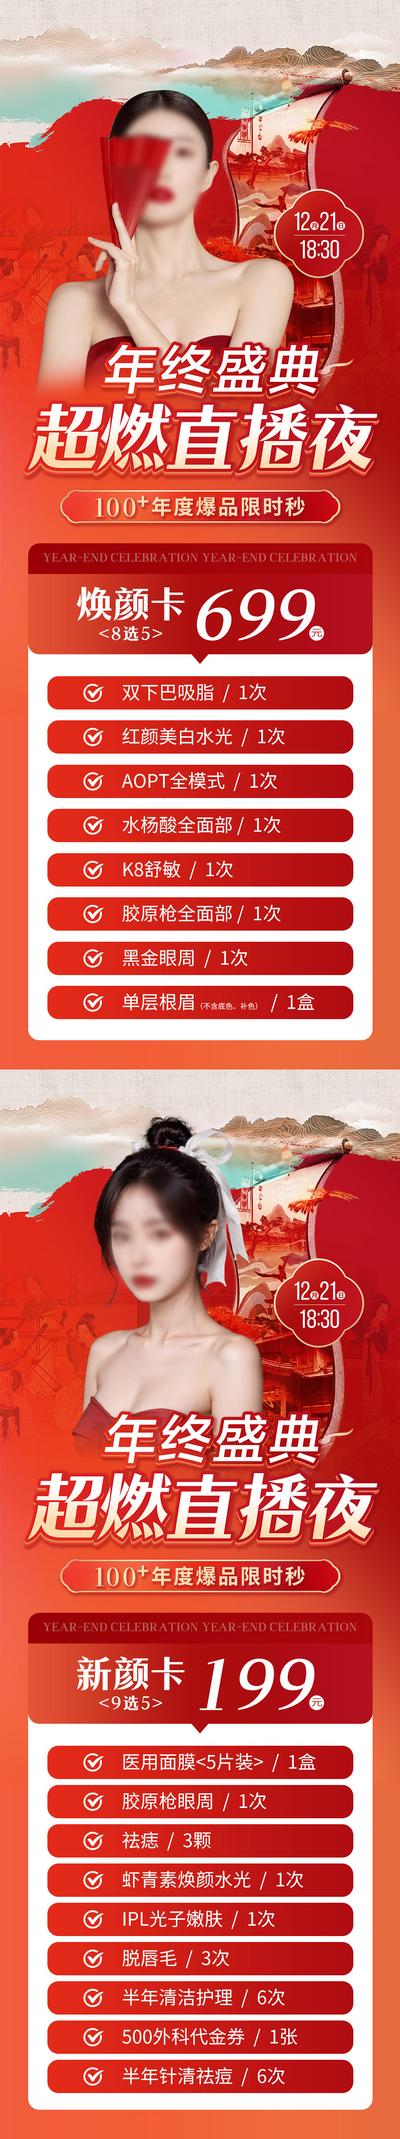 南门网 广告 海报 医美 直播 促销 中式 中国风 红色 卡项 年终盛典 爆品 秒杀 元旦 新年 专题 系列